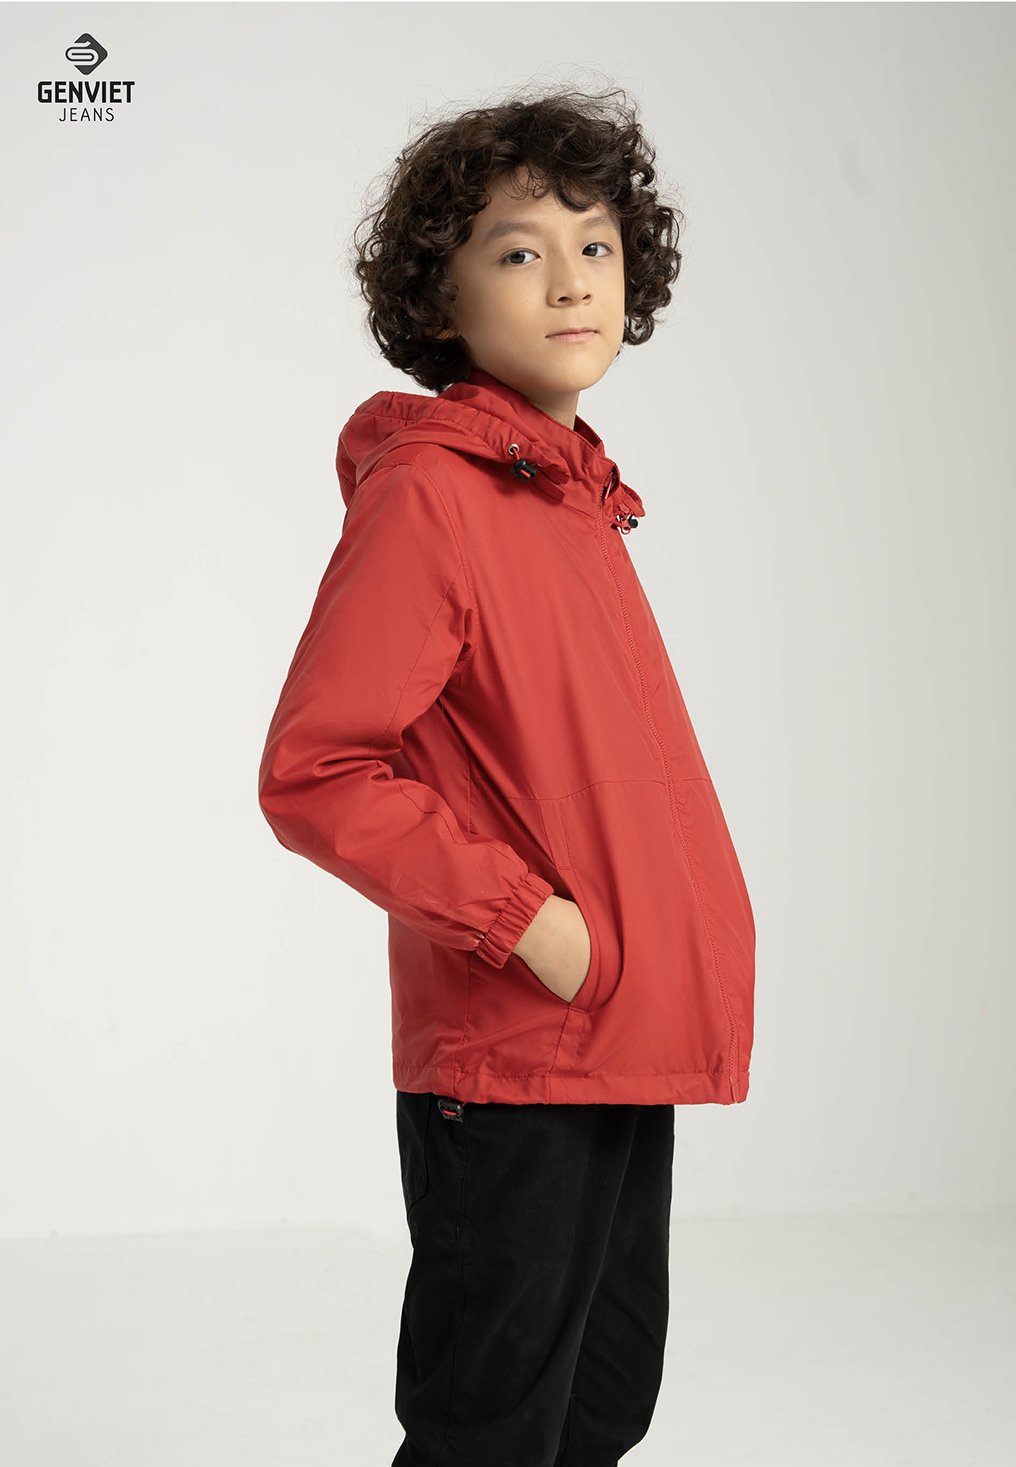 Đồ trẻ em ở UNIQLO đáng sắm nhất lúc này là áo khoác vì giá còn chưa đến  300k  Thời trang  Việt Giải Trí